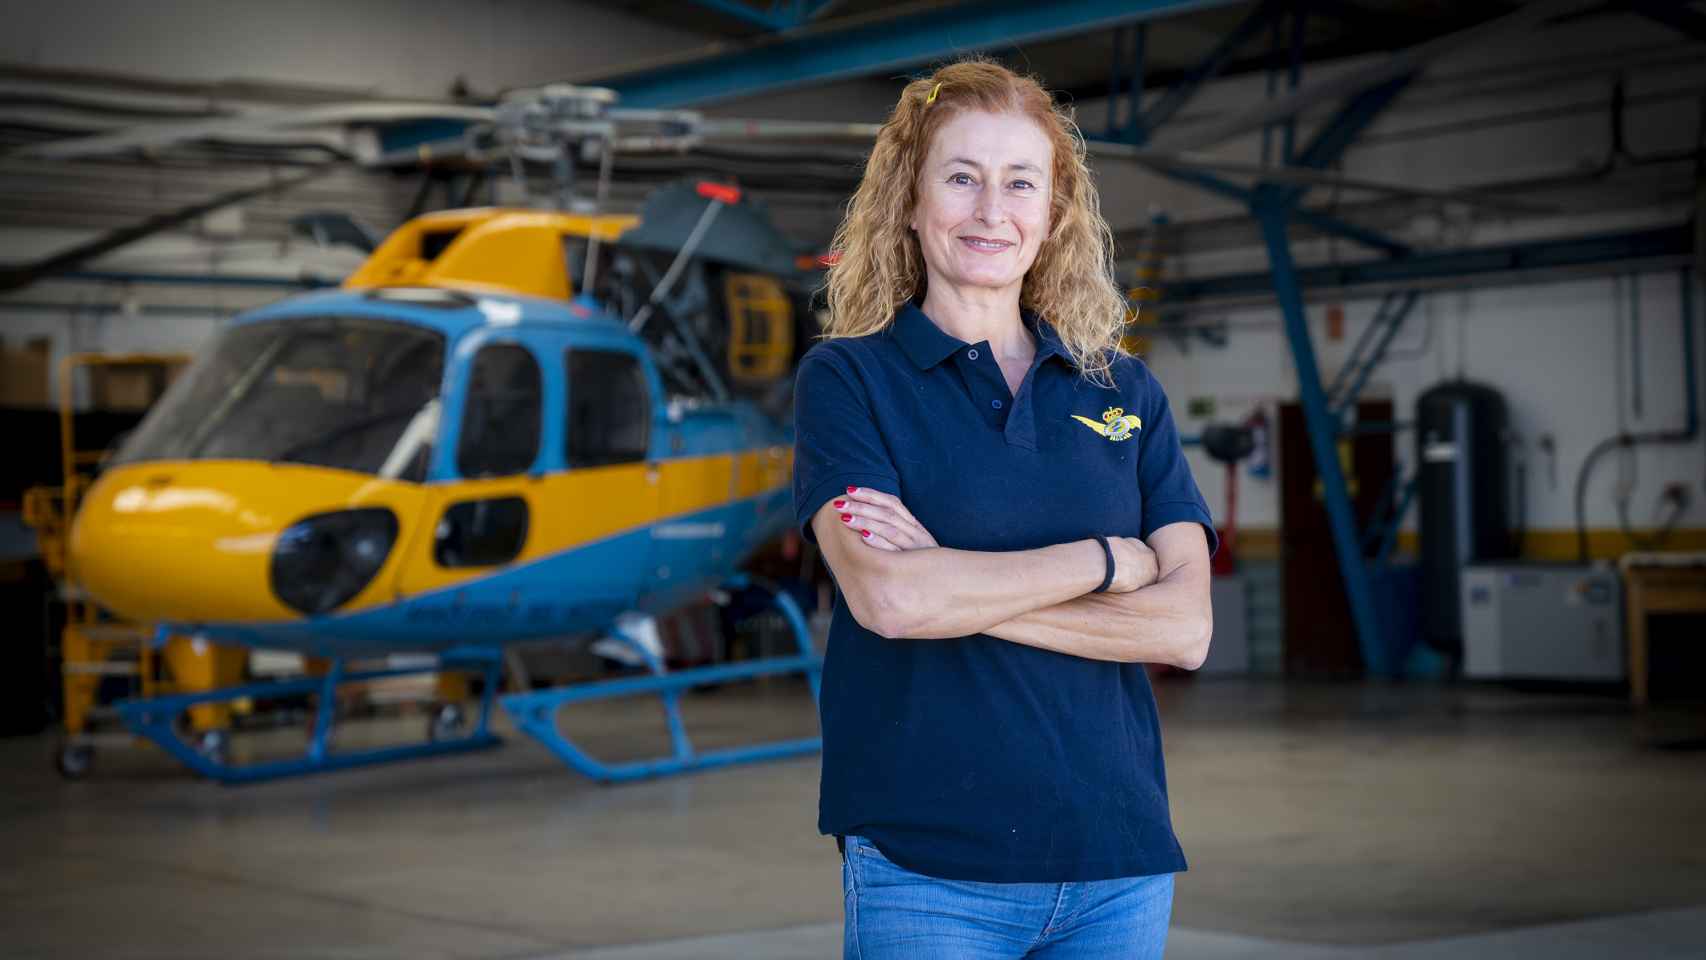 Irene Rivera en el hangar de helicópteros de Cuatro Vientos.